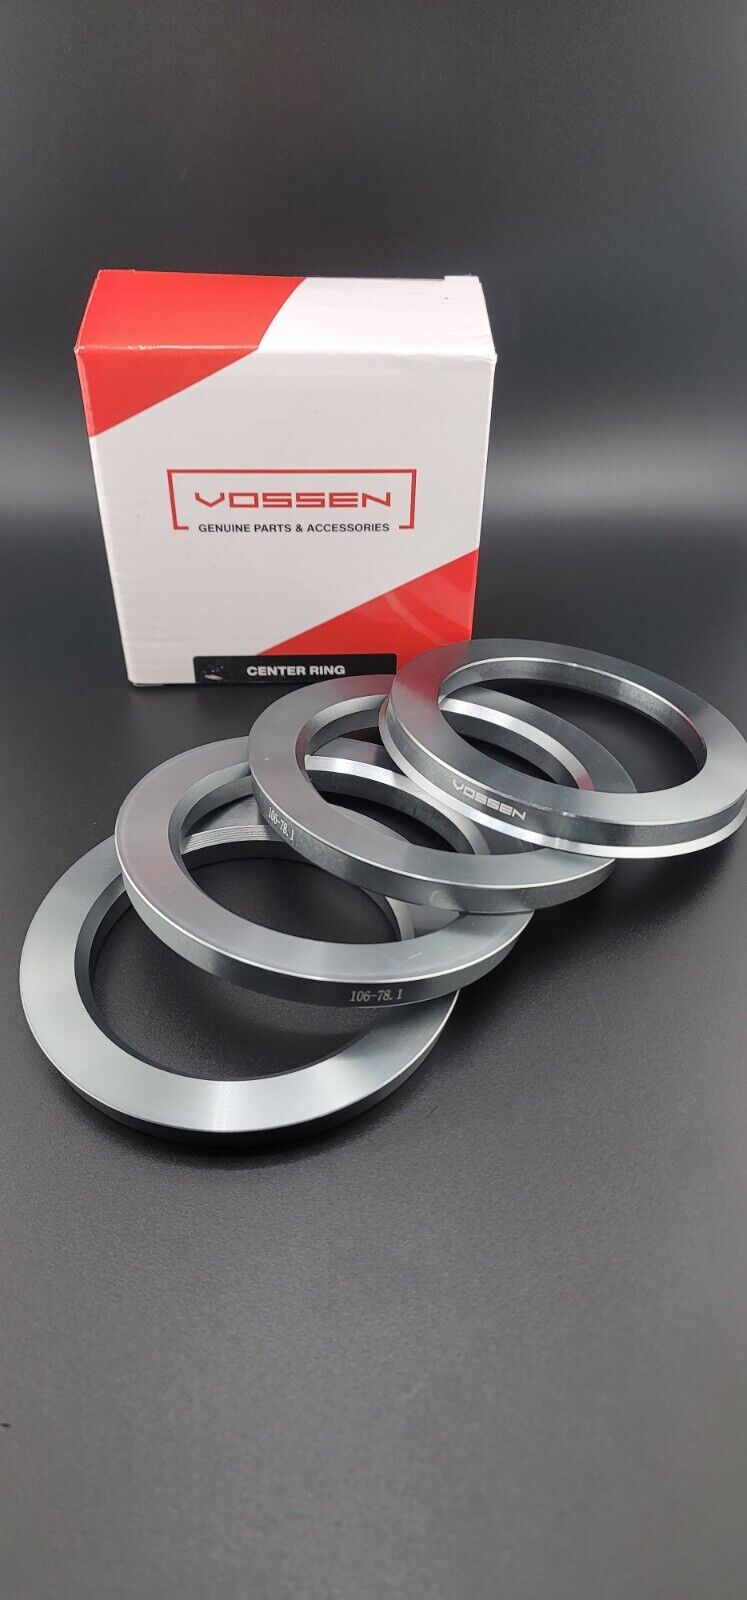 Vossen Wheel Hub Centric Rings 106-78.1